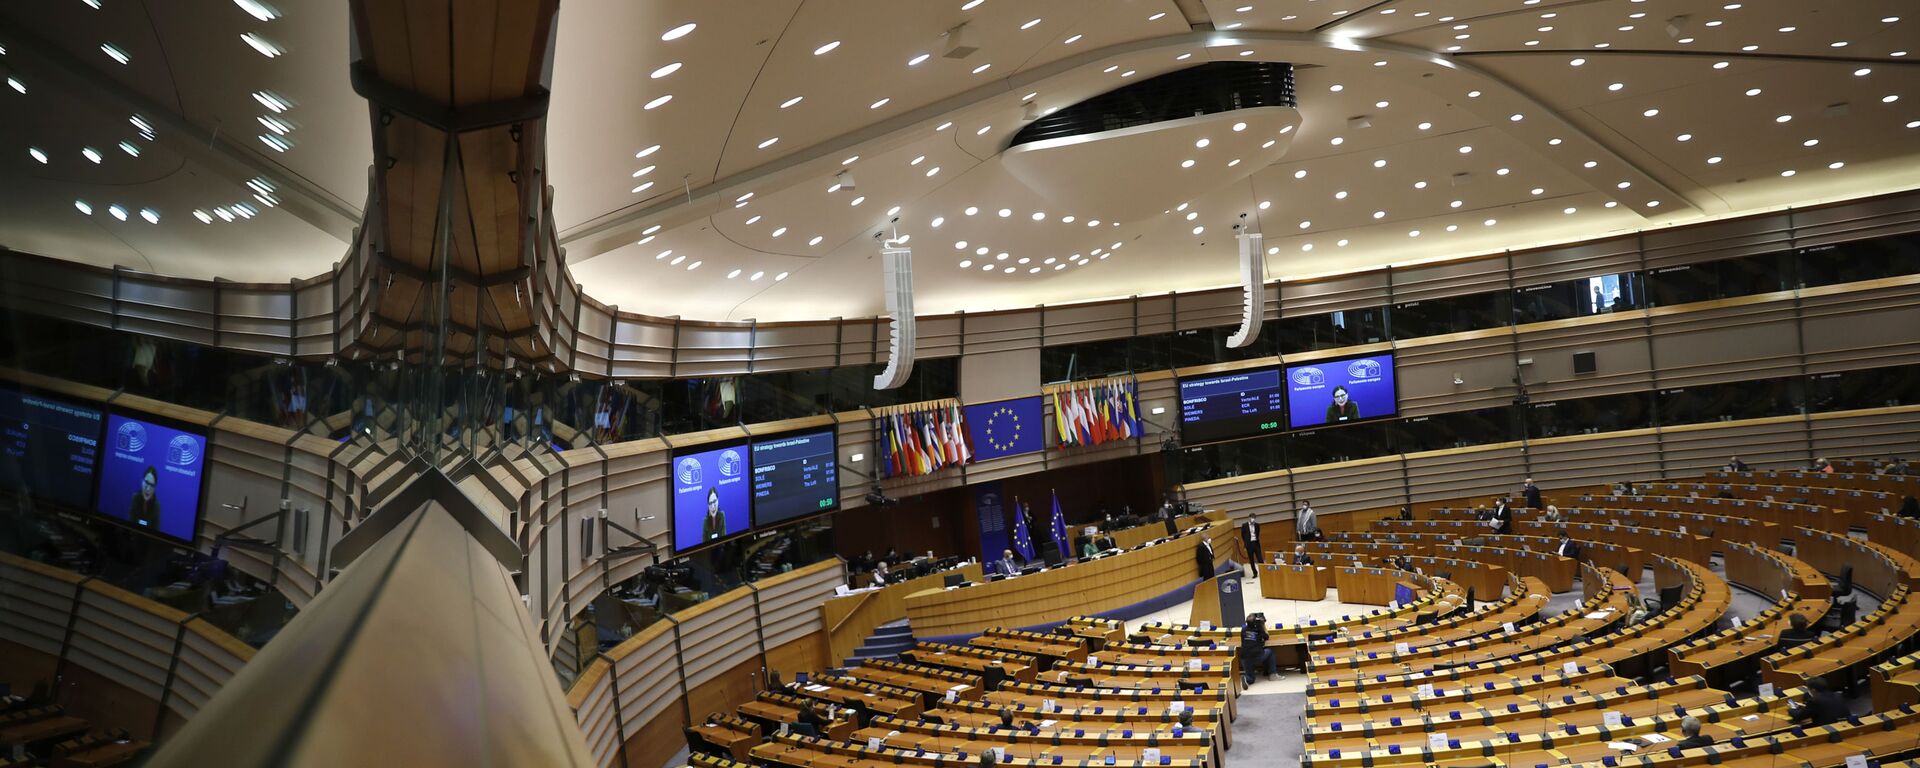 Заседање Европског парламента у Бриселу - Sputnik Србија, 1920, 16.09.2021